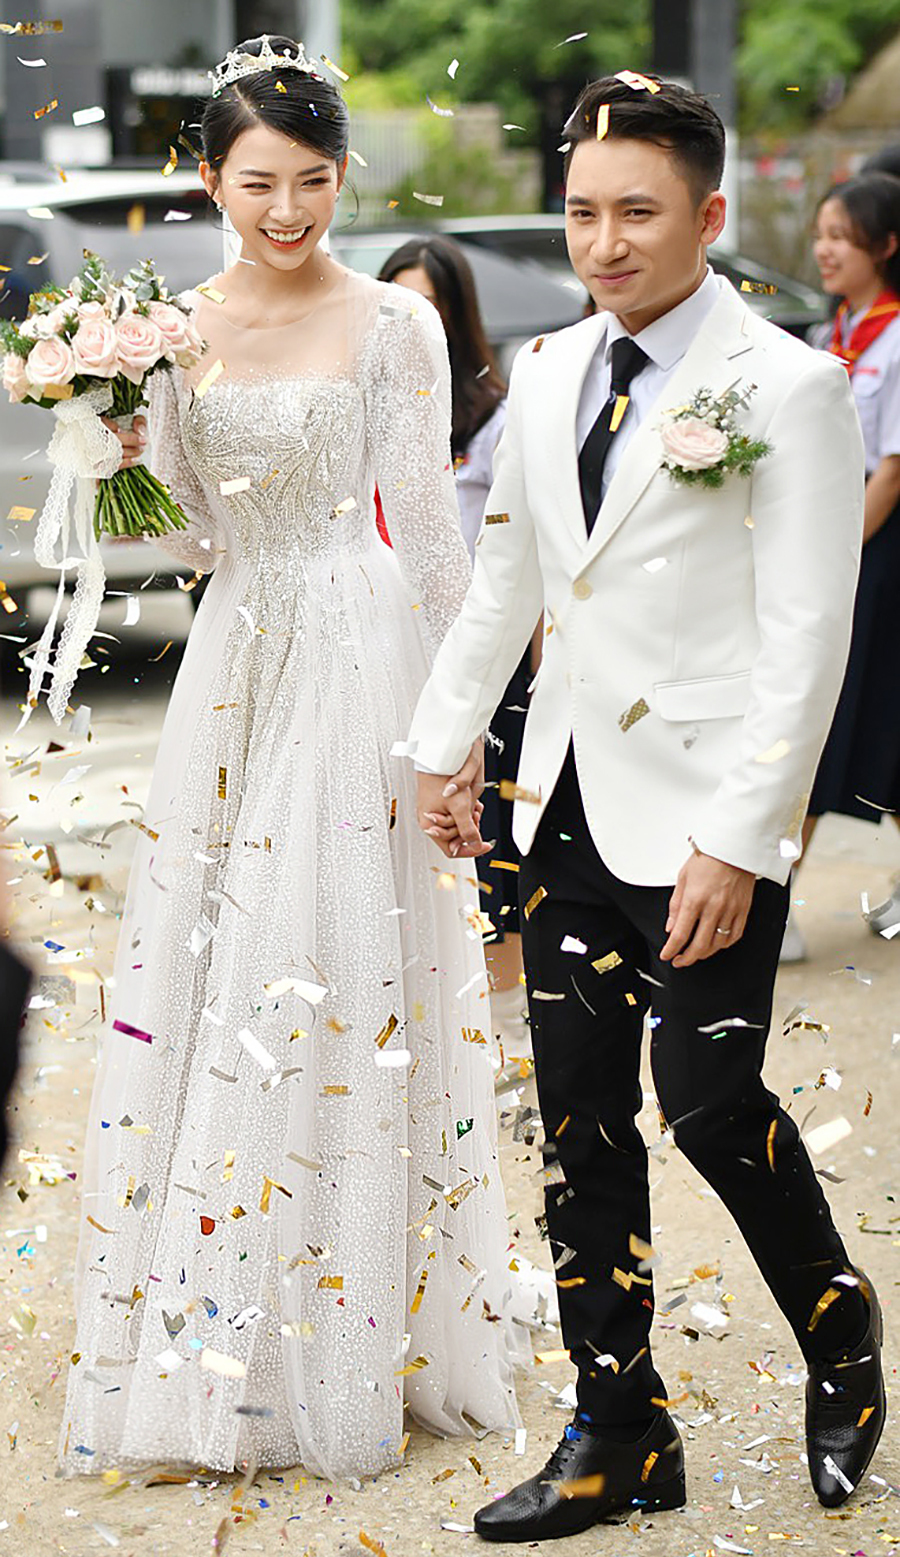 Đám cưới của Phan Mạnh Quỳnh và Khánh Vy diễn ra vào tháng 4 vừa qua. Cả hai dự định tổ chức một tiệc mừng tại Sài Gòn vào đầu tháng 5, nhưng do dịch bệnh nên phải hoãn lại